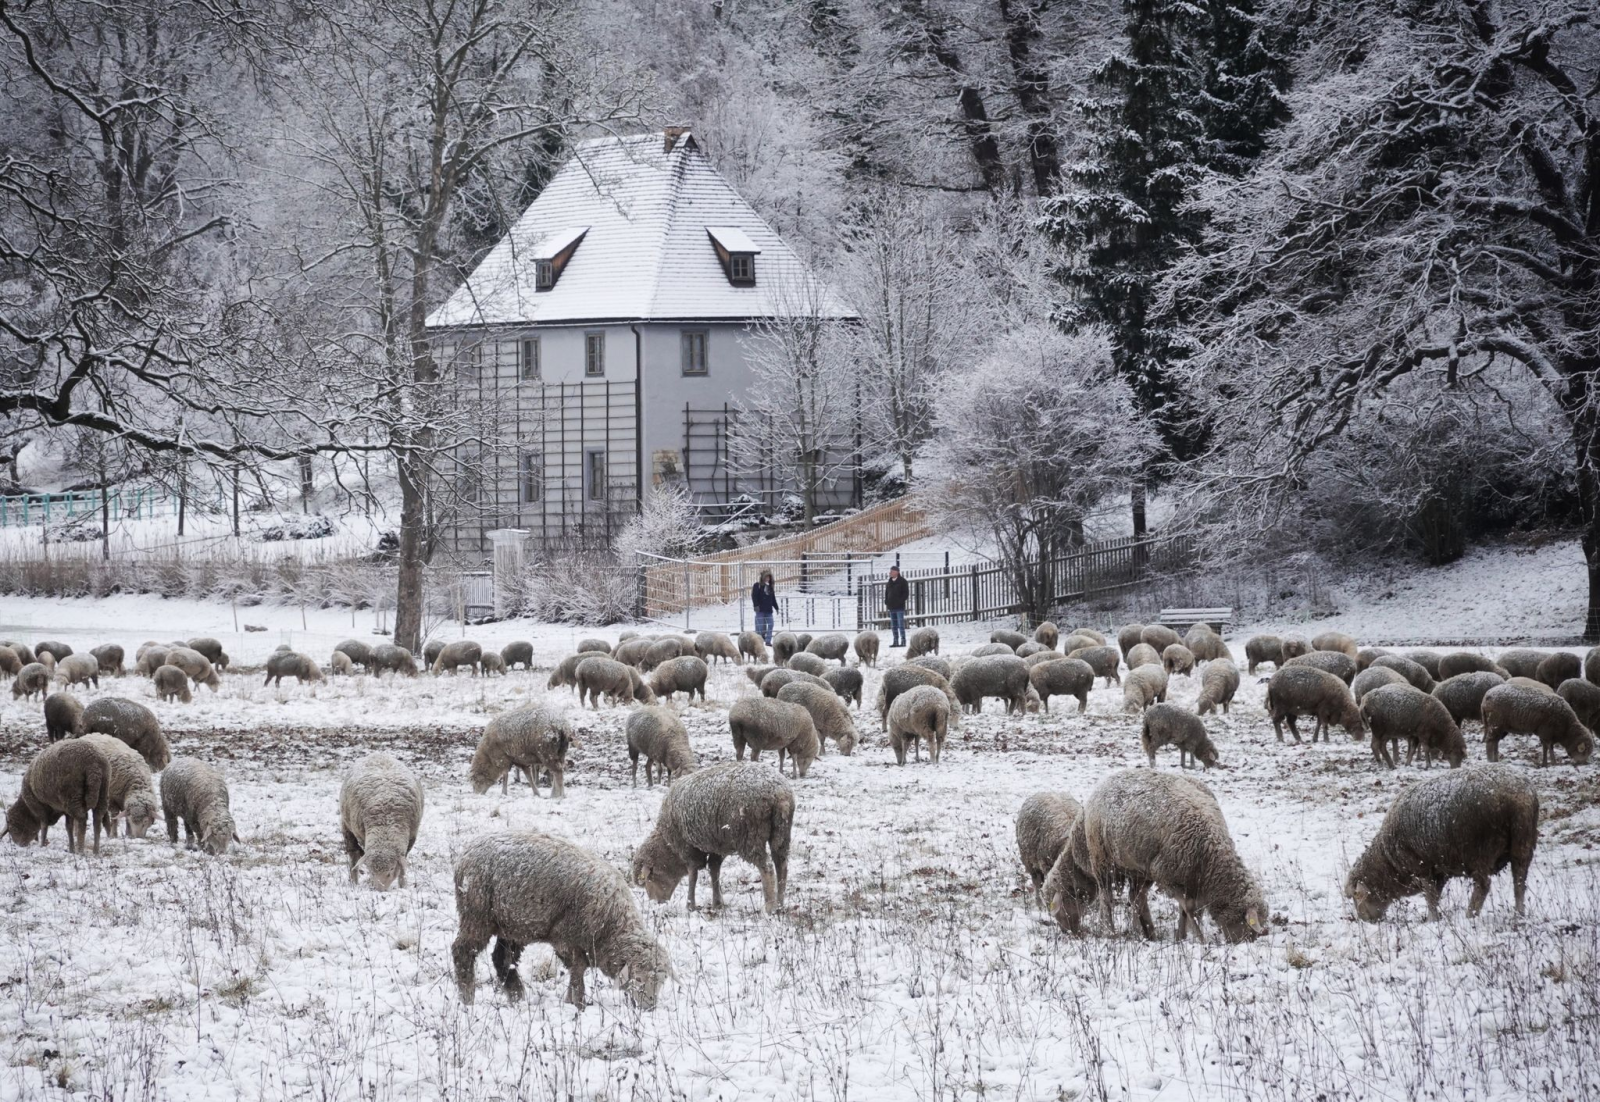 Schafe weiden auf einer verschneiten Wiese an der Ilm.